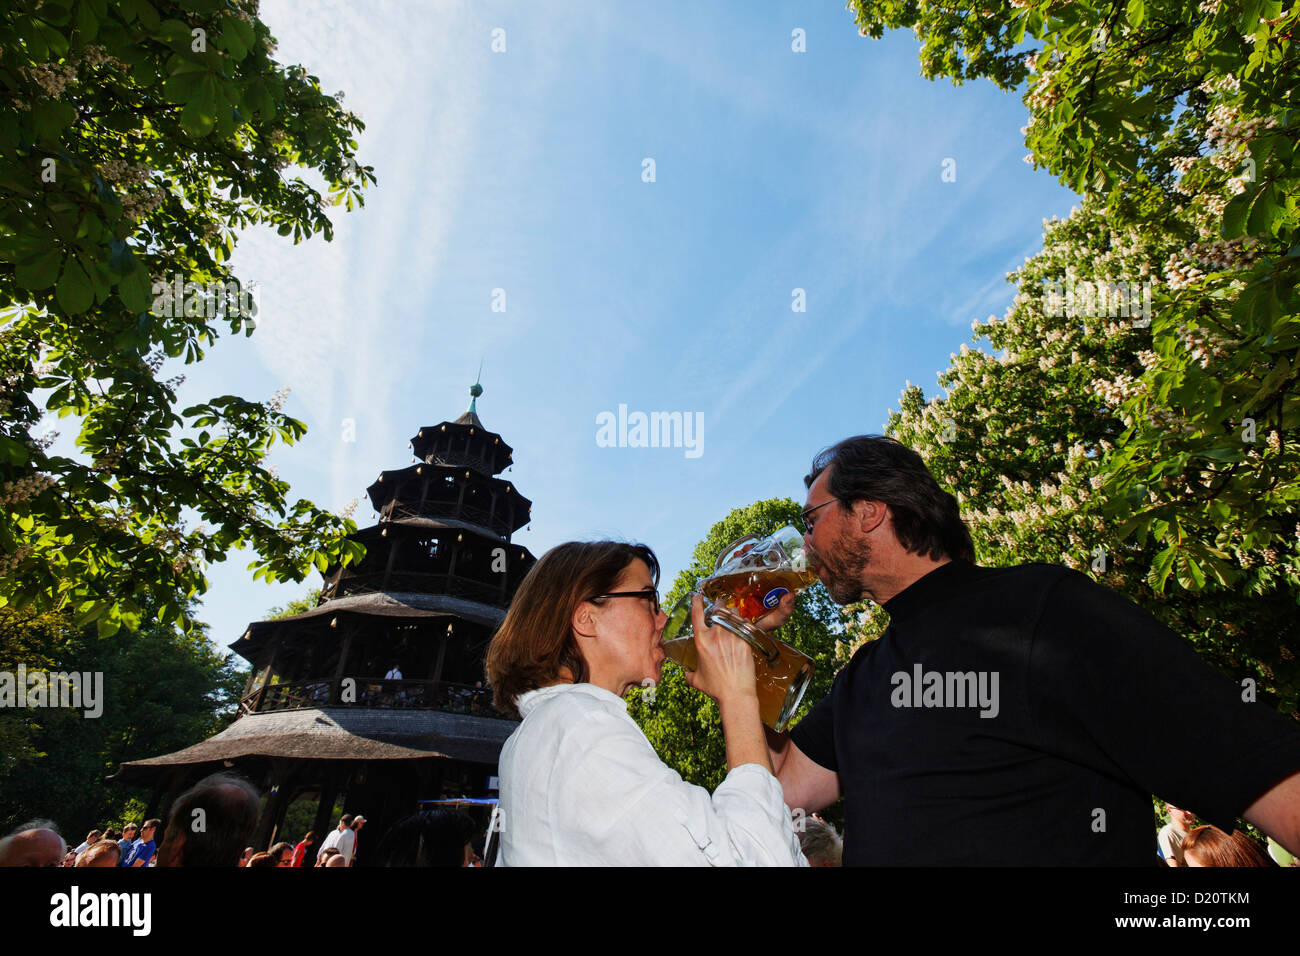 Menschen genießen einen sonnigen Tag im Biergarten Chinesischer Turm, Englischer Garten, München, Upper Bavaria, Bavaria, Germany, Eu Stockfoto